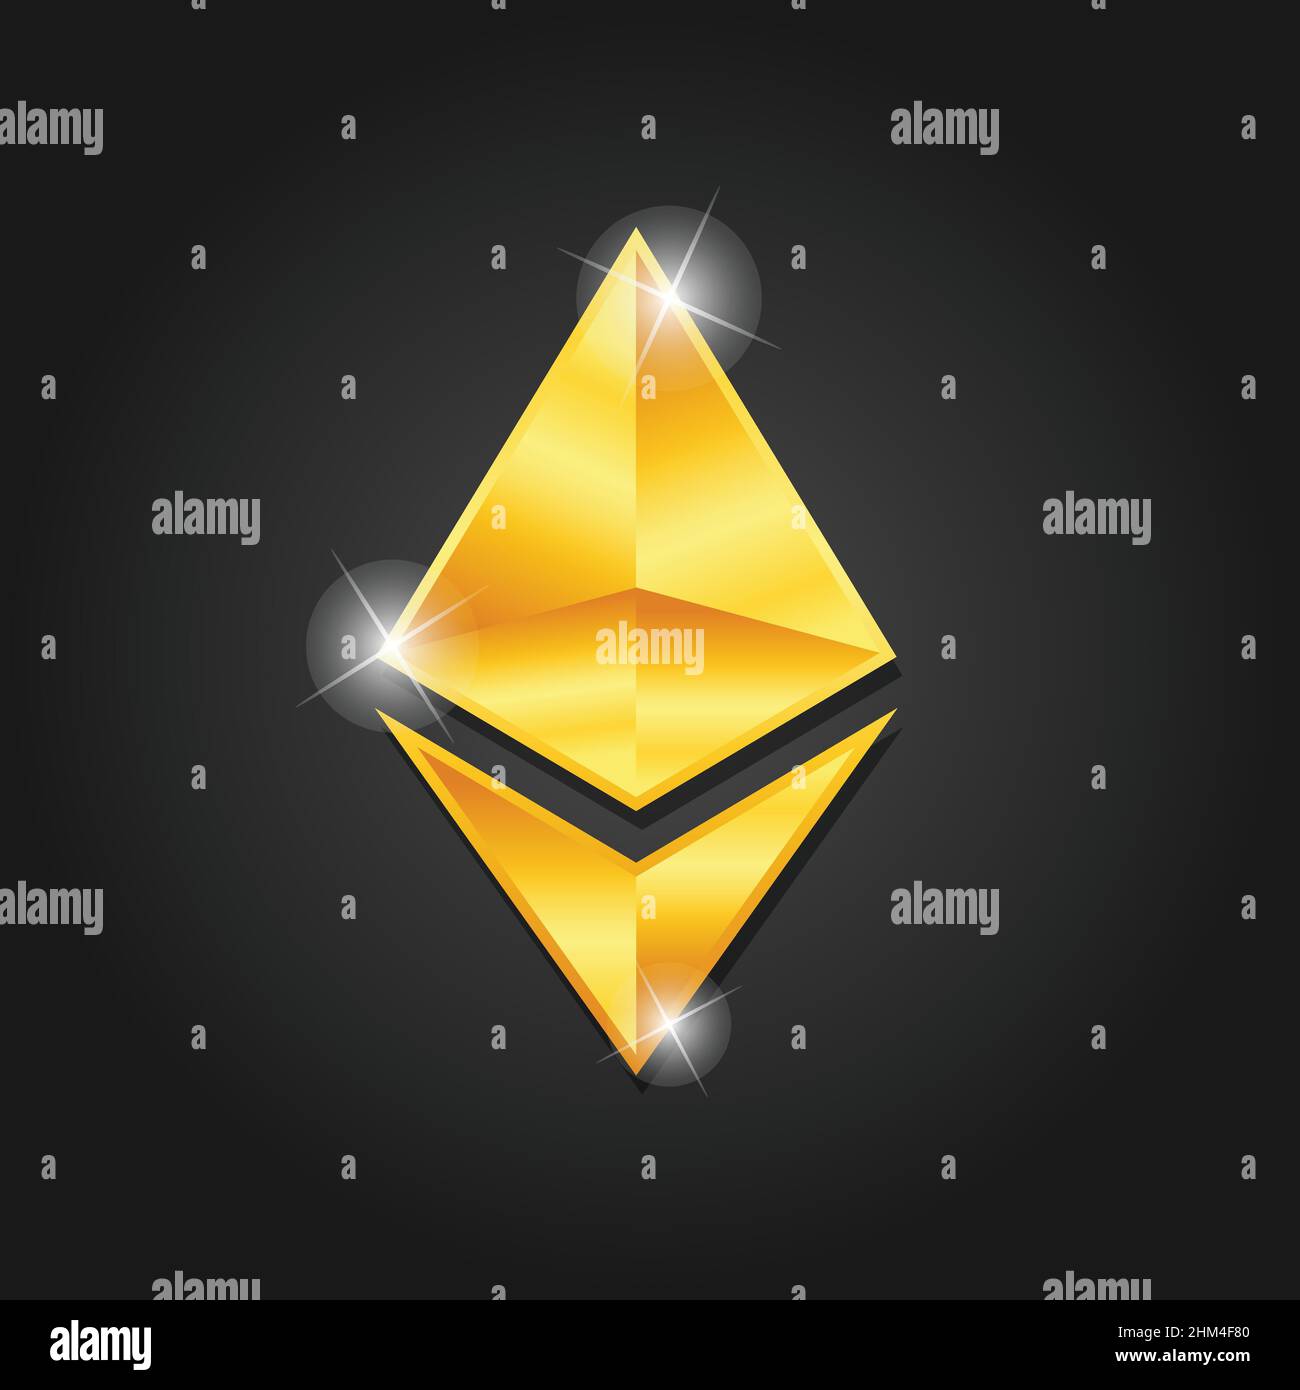 Immagine vettoriale del simbolo del badge con icona di Ethereum lucido dorato. Moneta digitale Golden per la criptovaluta. Il simbolo di moneta di finanza elettronica. Illustrazione Vettoriale